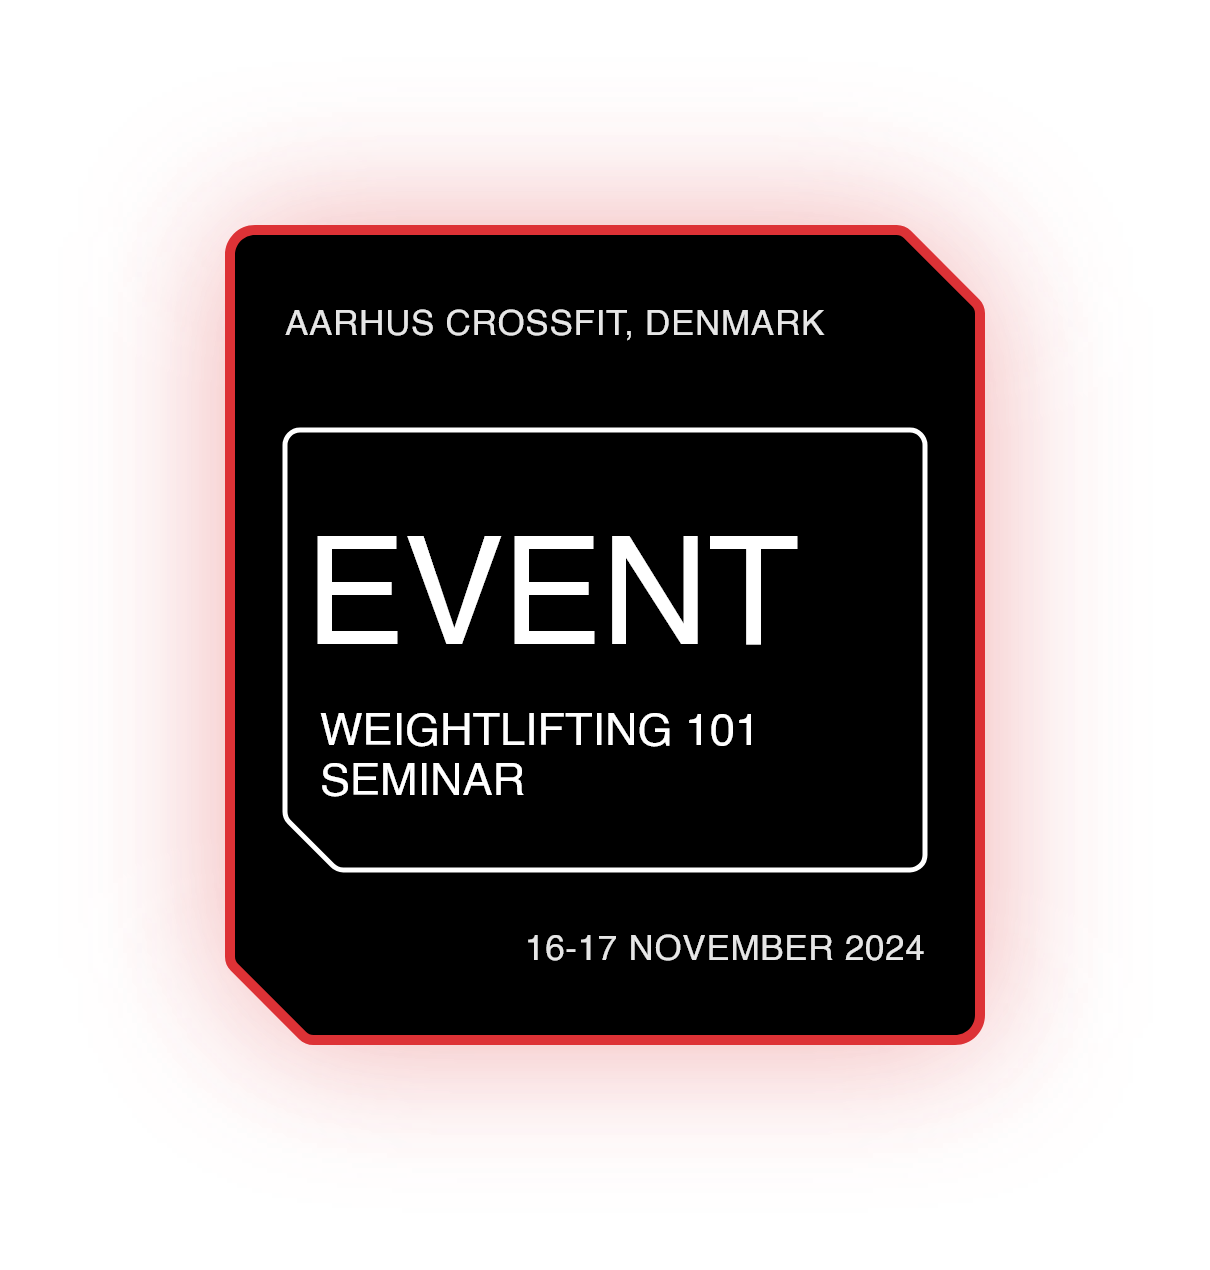 Weightlifting 101 Seminar - Aarhus, Denmark